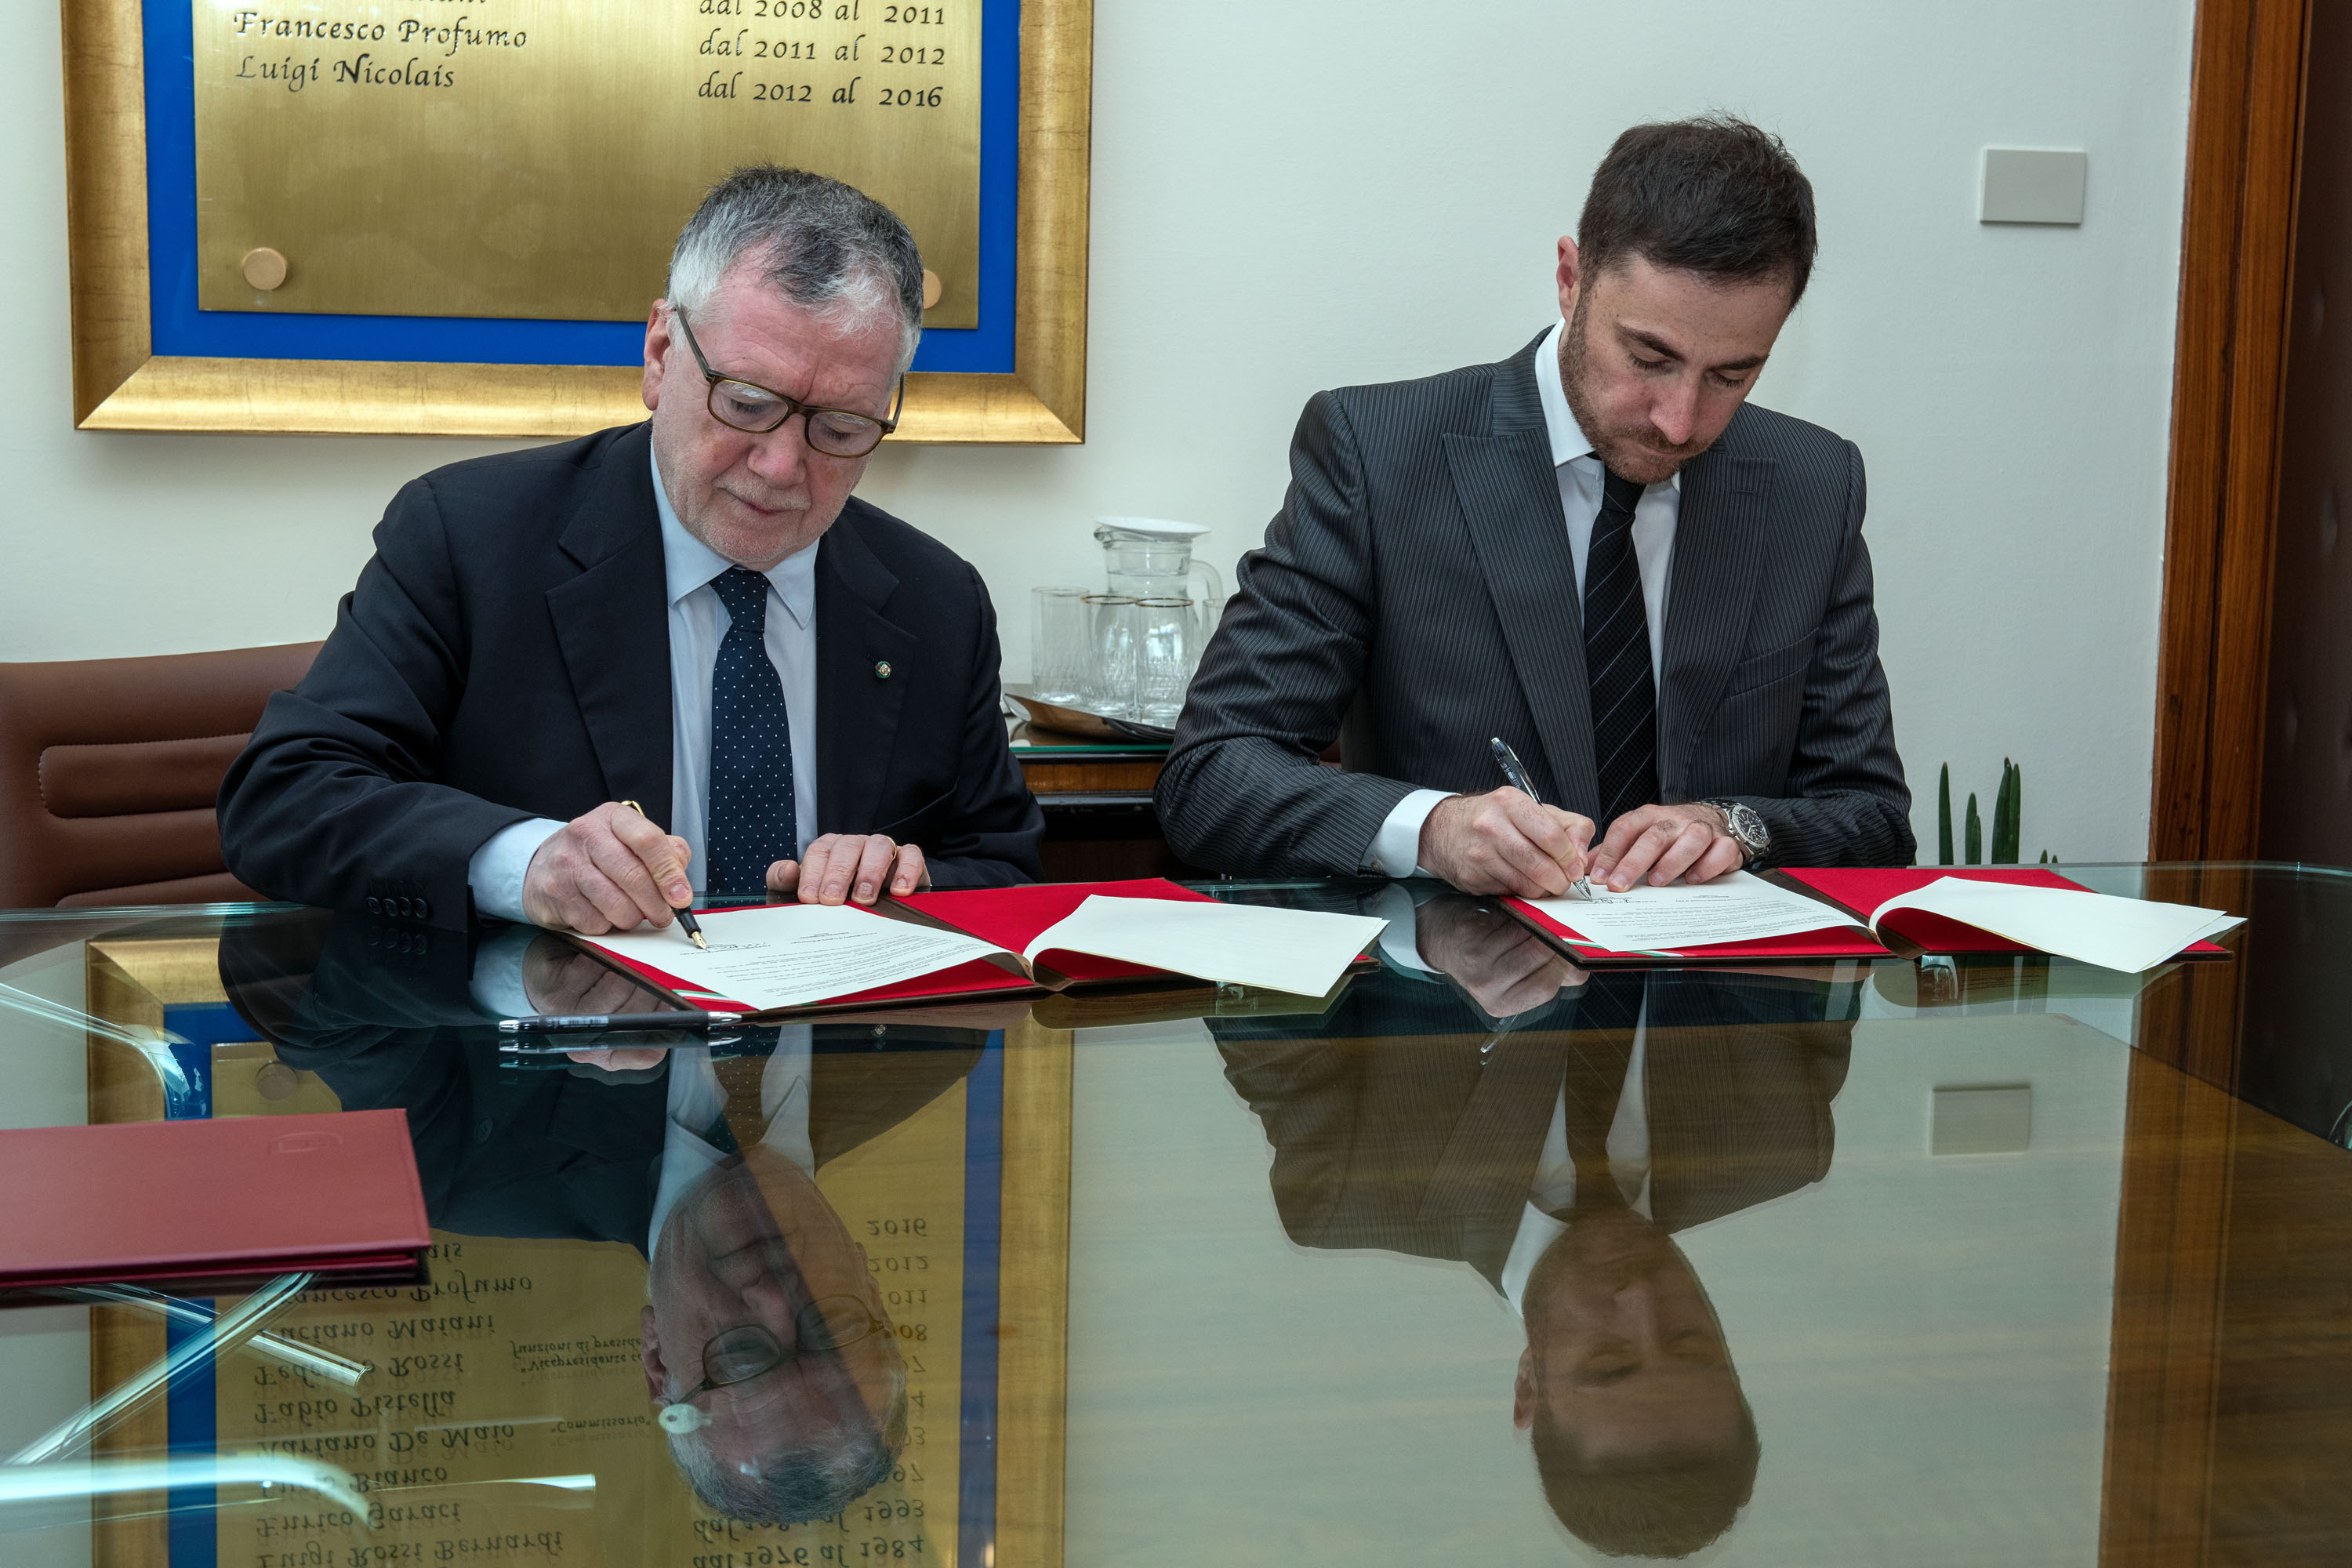 Potpisan Memorandum o razumijevanju između Ministarstva kulture CG i Nacionalnog istraživačkog savjeta Italije